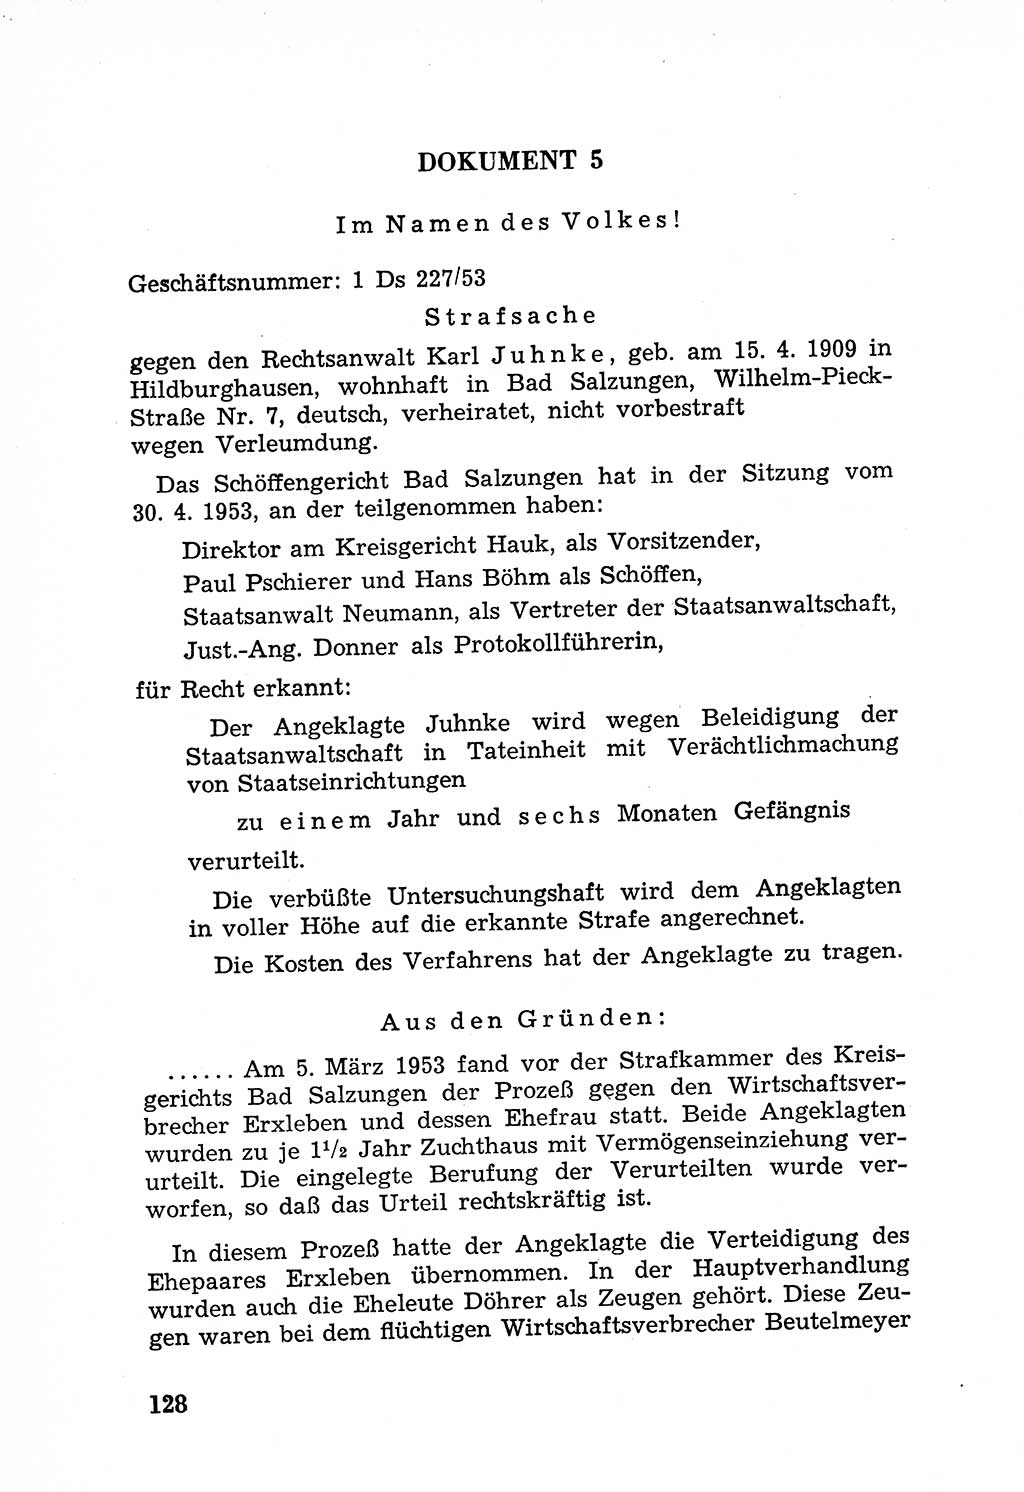 Rechtsstaat in zweierlei Hinsicht, Untersuchungsausschuß freiheitlicher Juristen (UfJ) [Bundesrepublik Deutschland (BRD)] 1956, Seite 128 (R.-St. UfJ BRD 1956, S. 128)